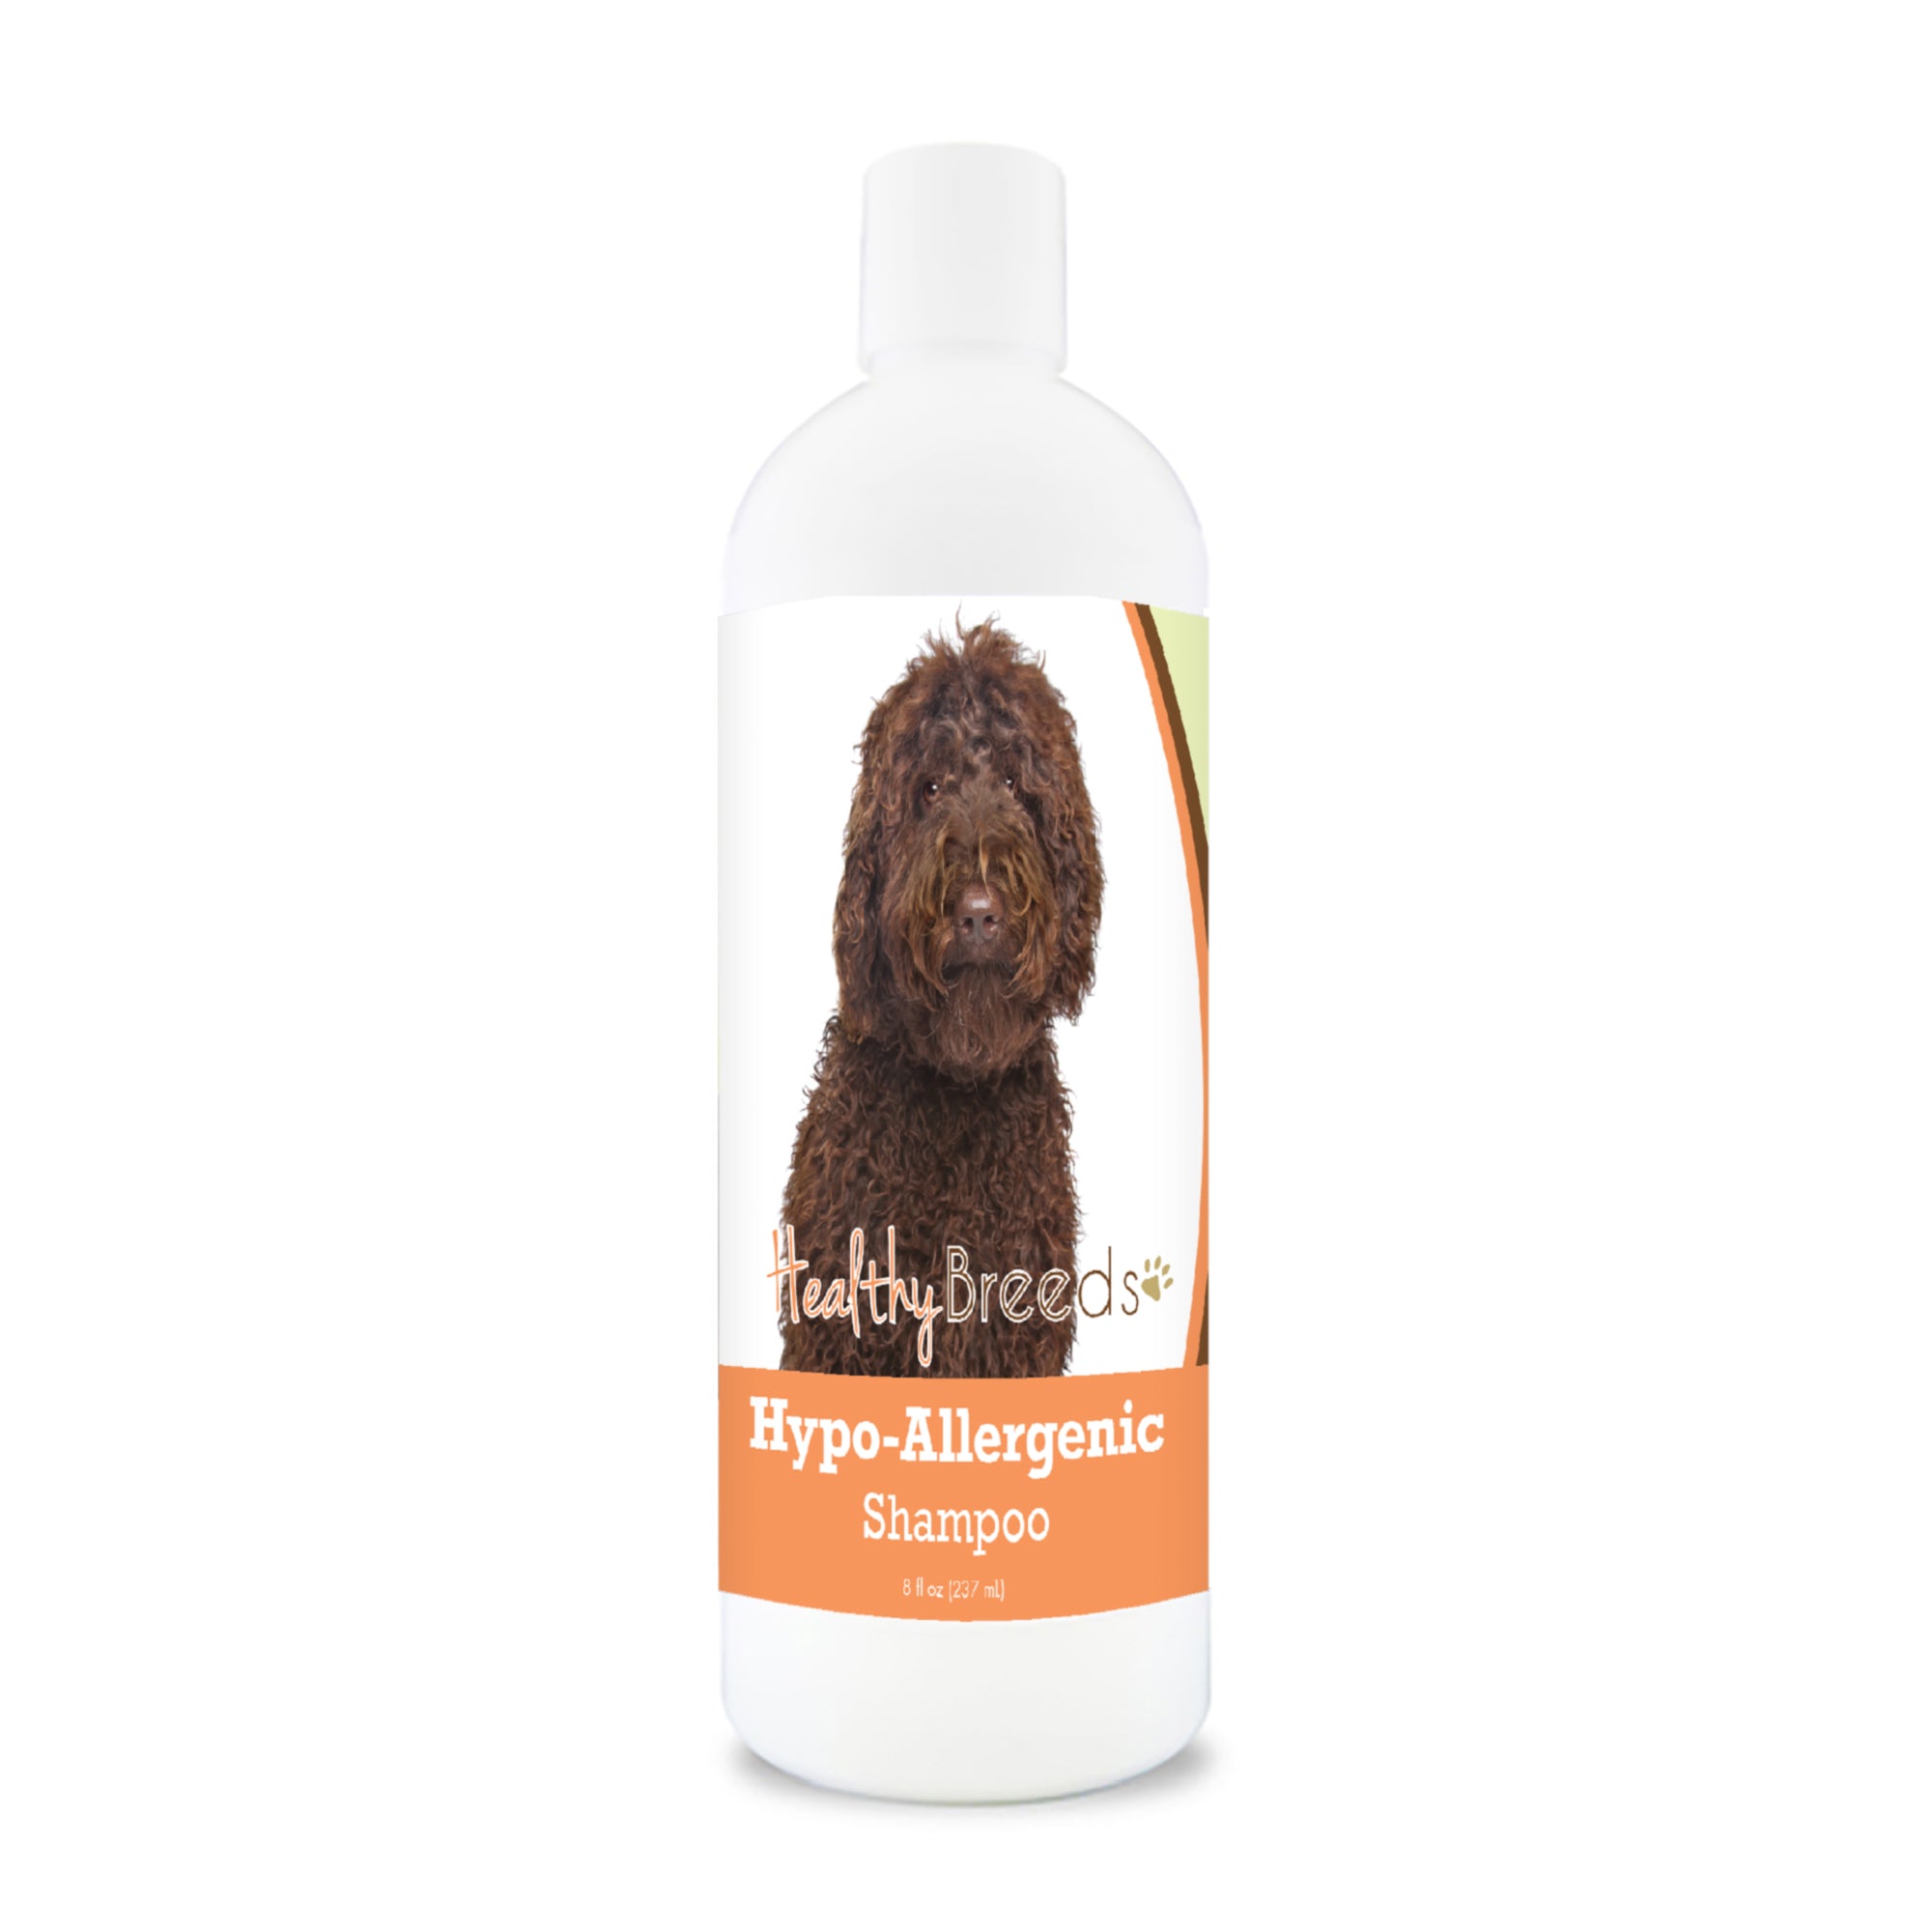 Labradoodle Hypo-Allergenic Shampoo 8 oz